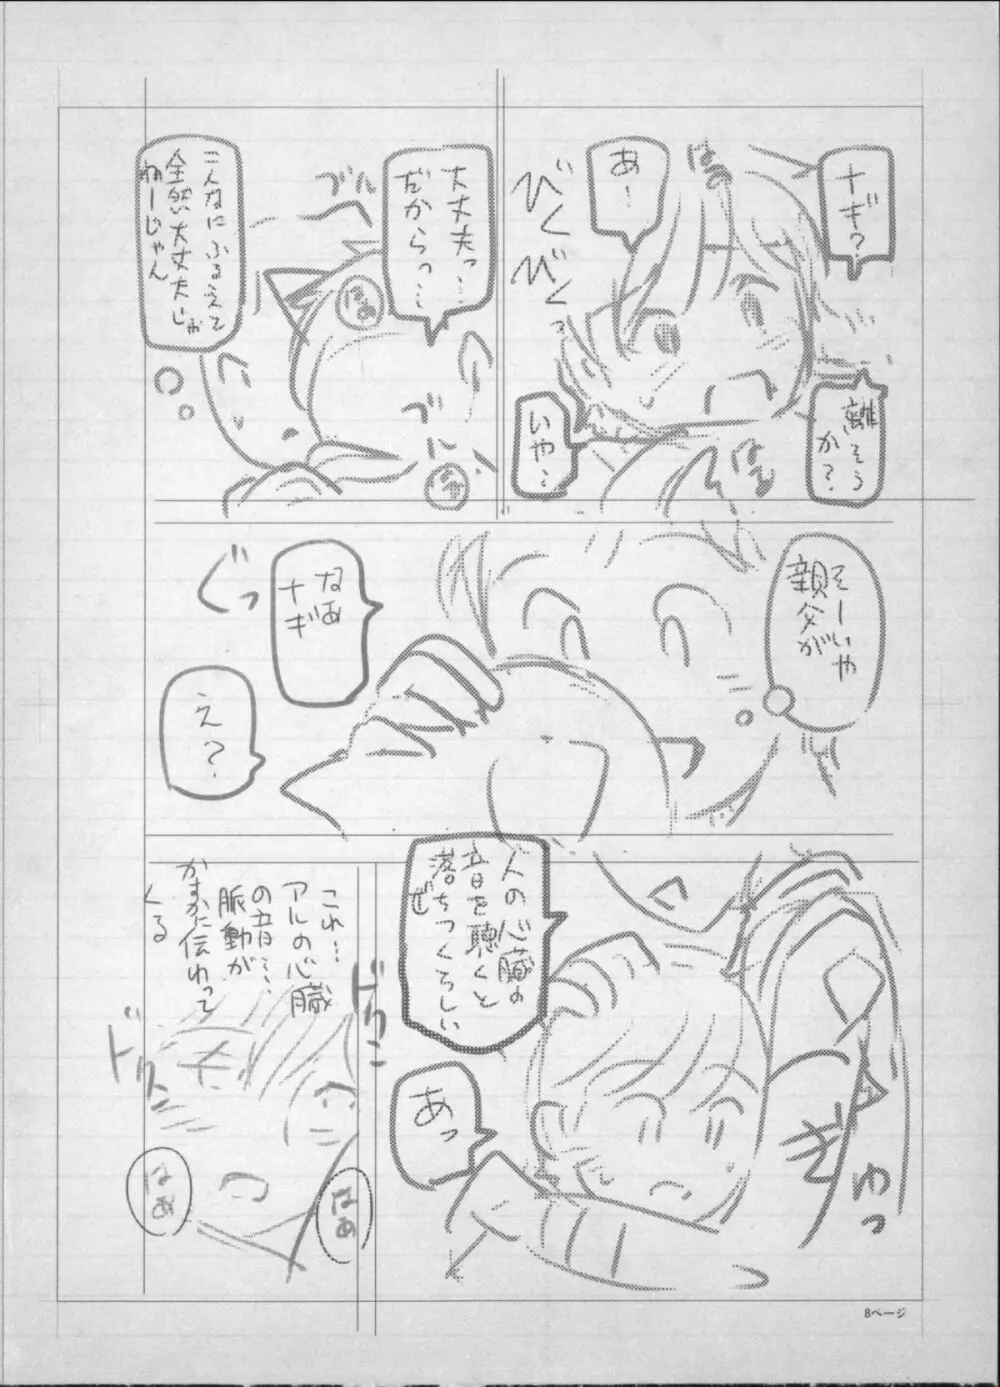 魔女×ショタ + 描き下ろし8P小冊子, 限定版 特典情報 ~ 限定版 255ページ